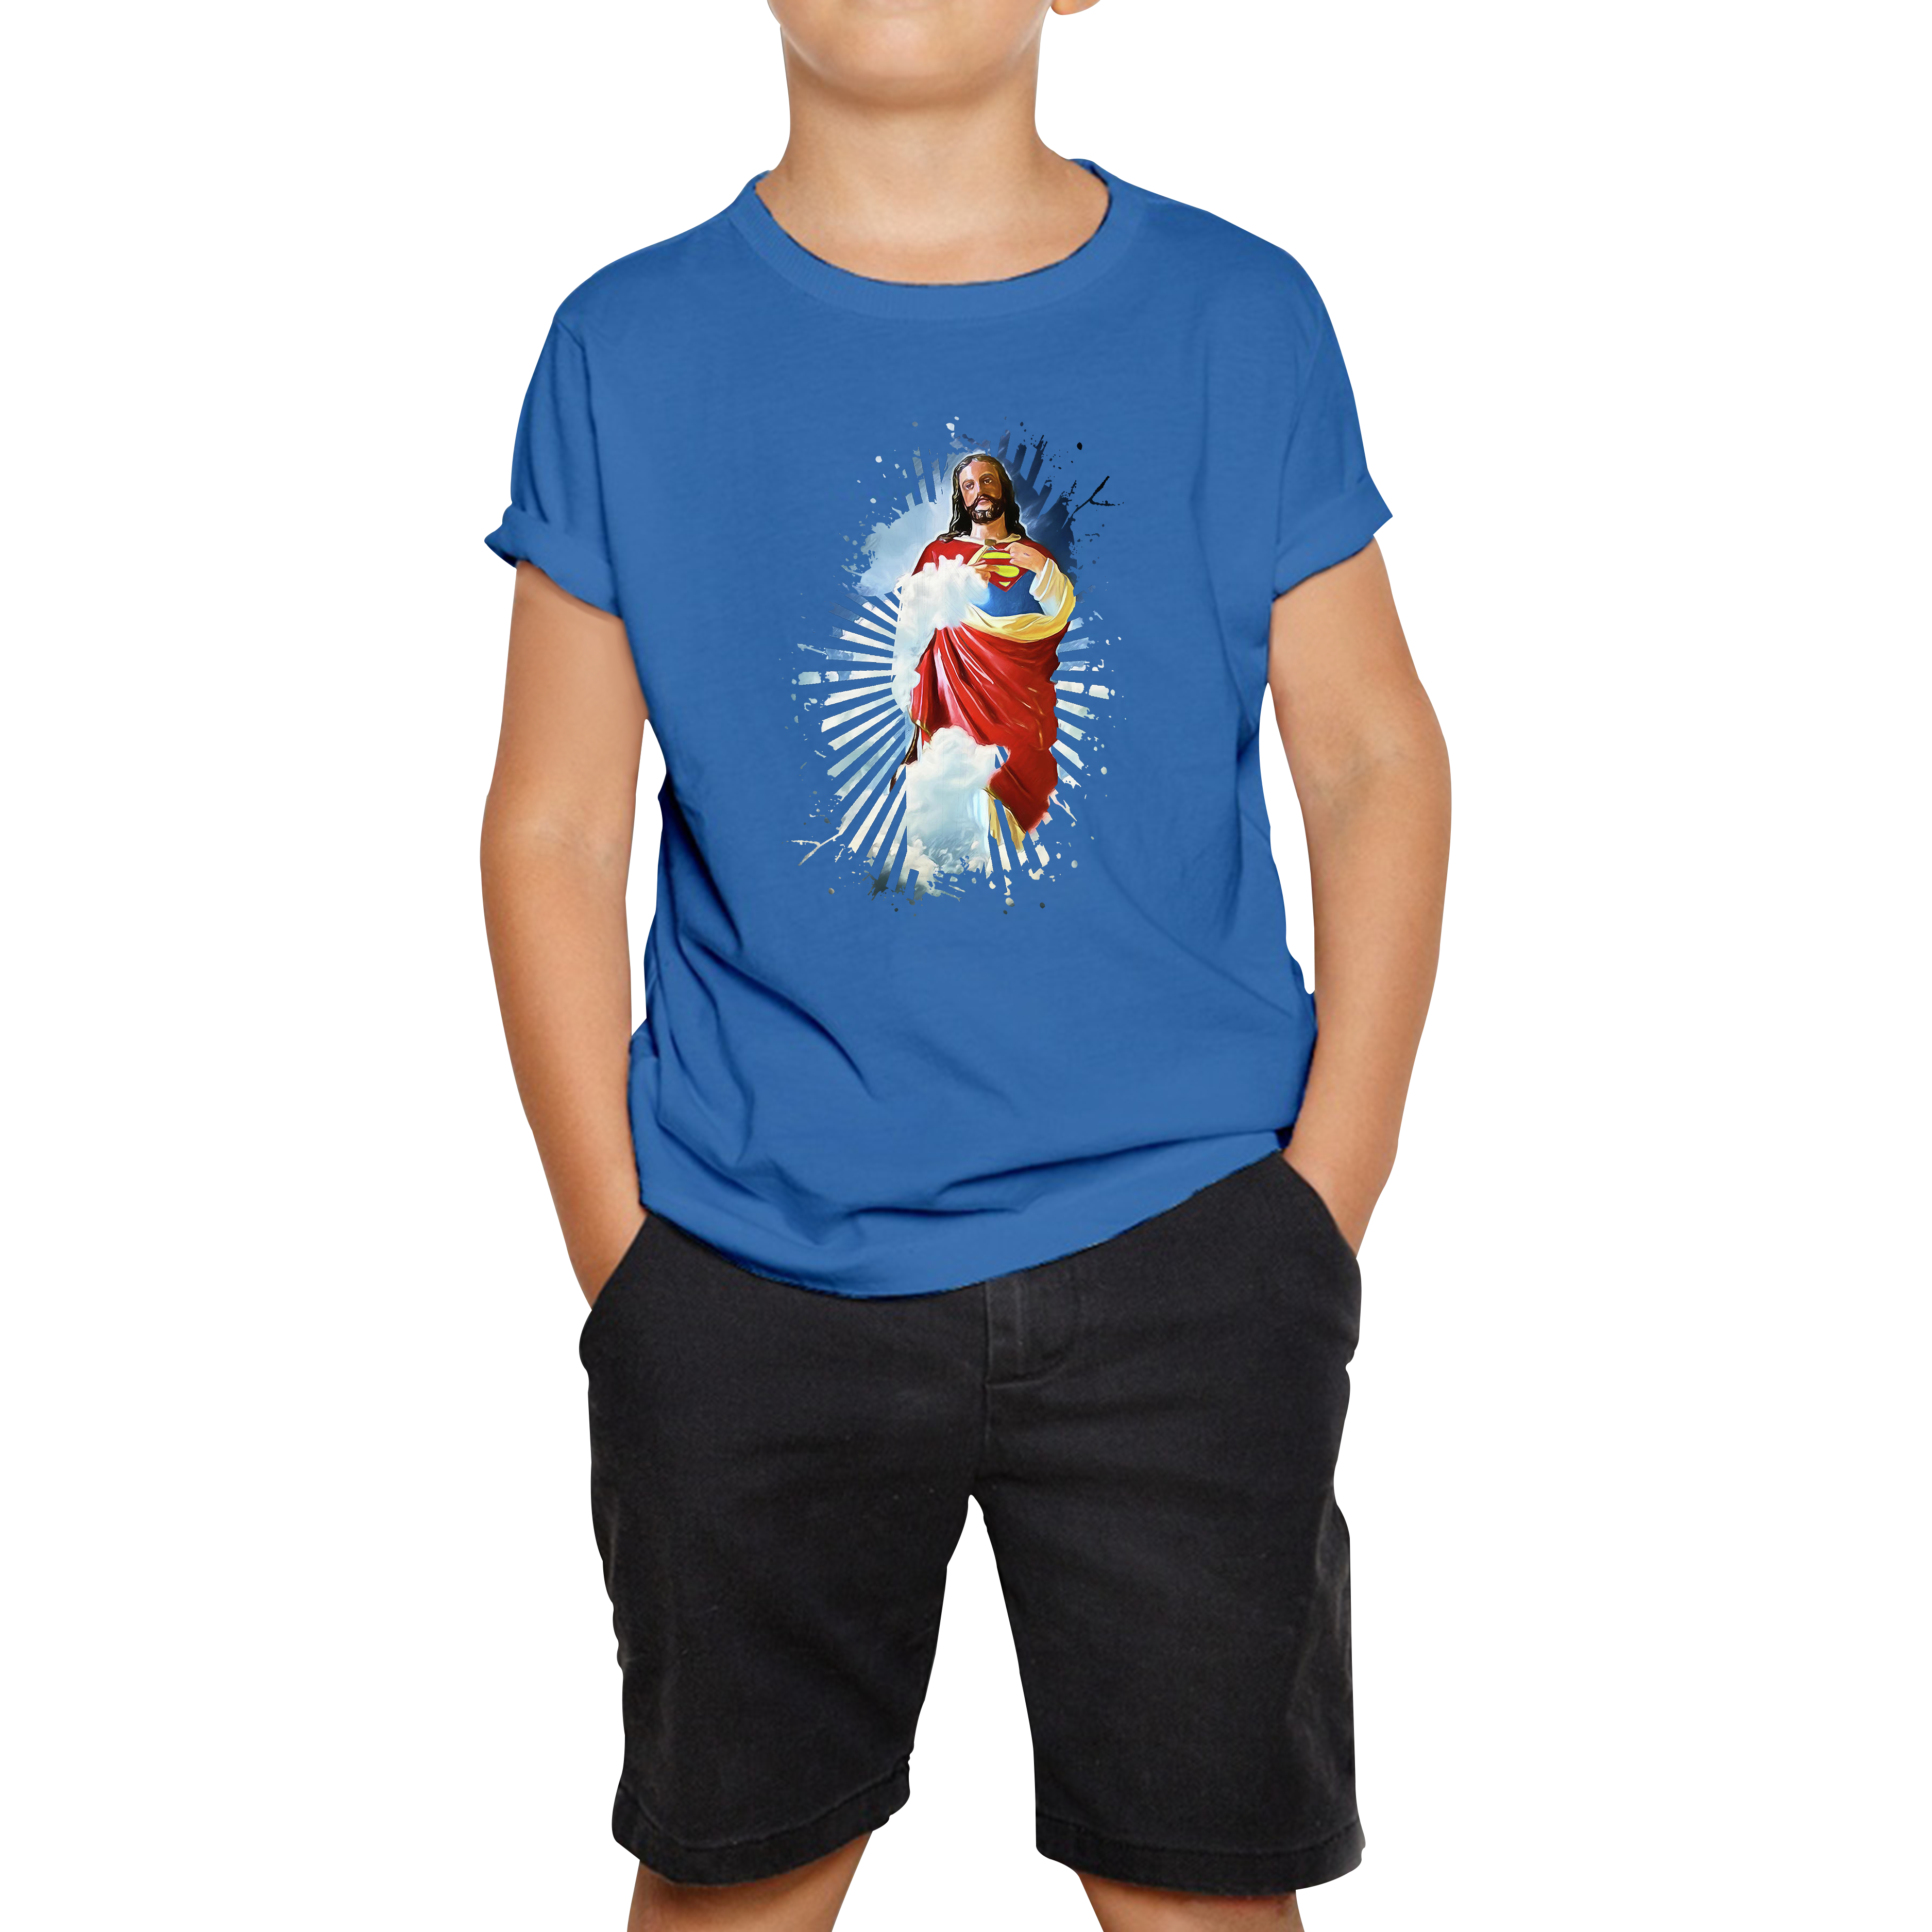 Jesus Christ Superman T-shirt Superman Inspired Spoof Avengers Superhero Christian Gift Kids Tee